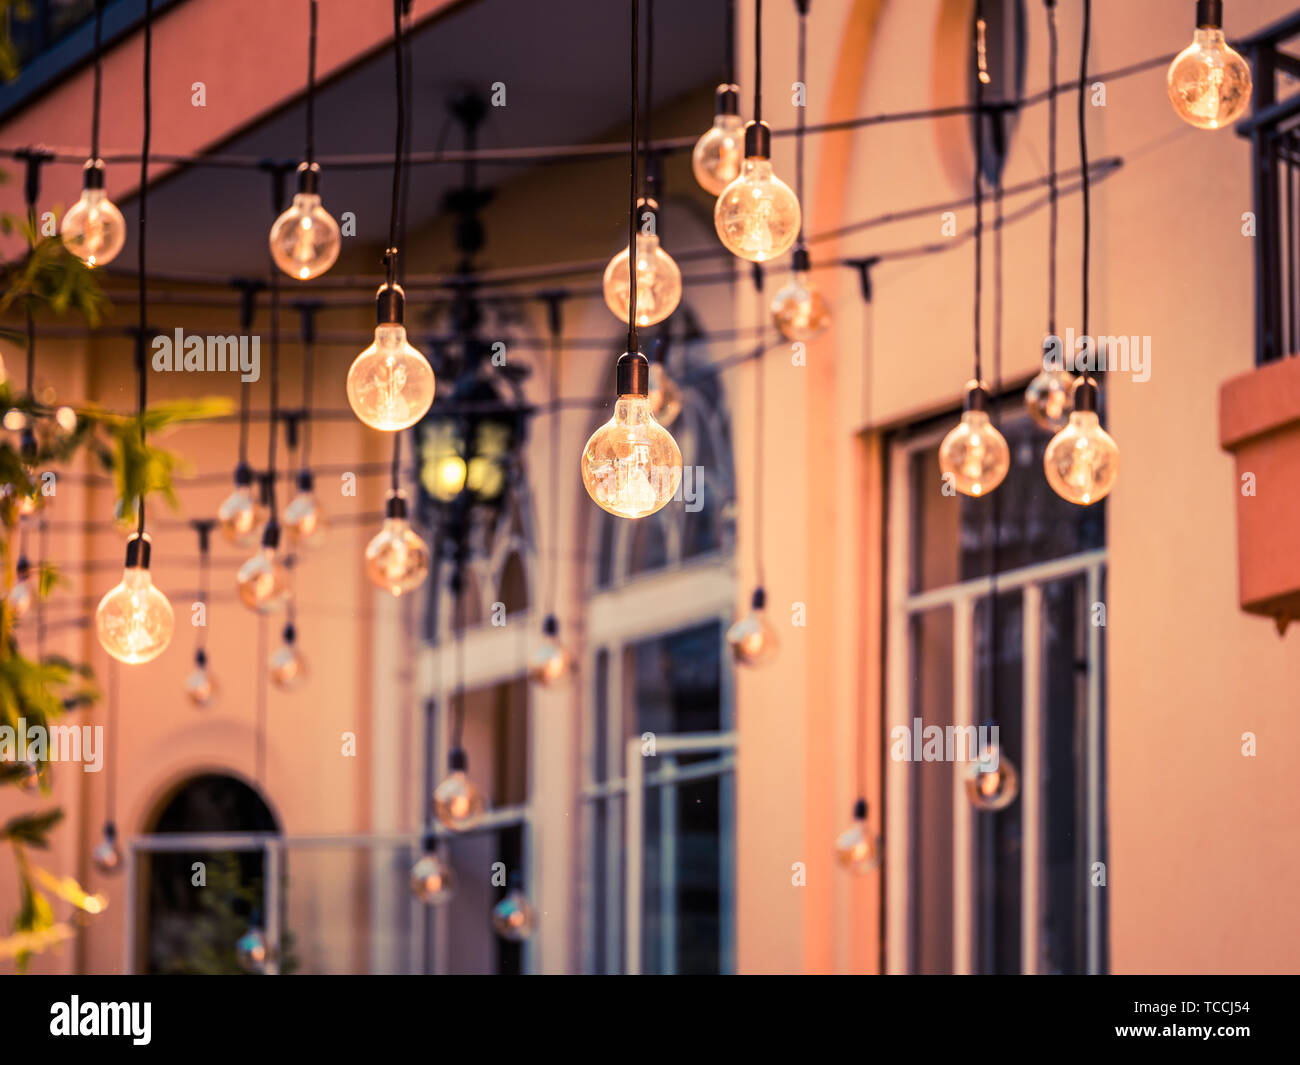 Belle image de luxe rétro décoration lampes de lumière brillants dans la ville Banque D'Images